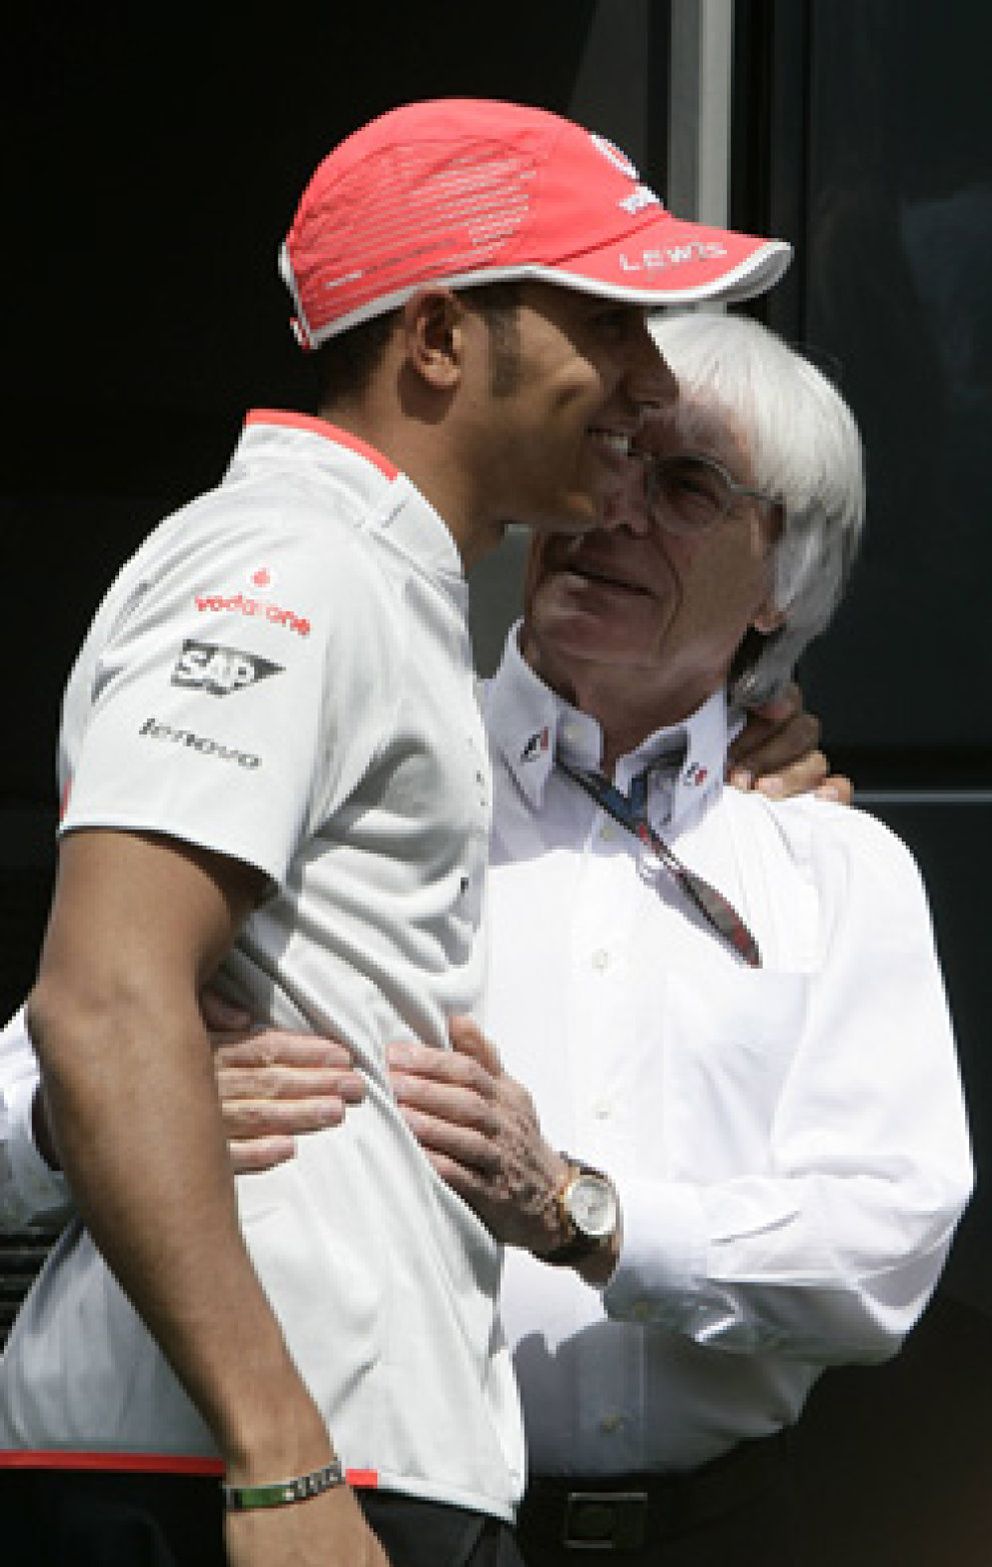 Foto: ¿Hamilton fuera de McLaren? Ecclestone y su ruido mediático dicen sí